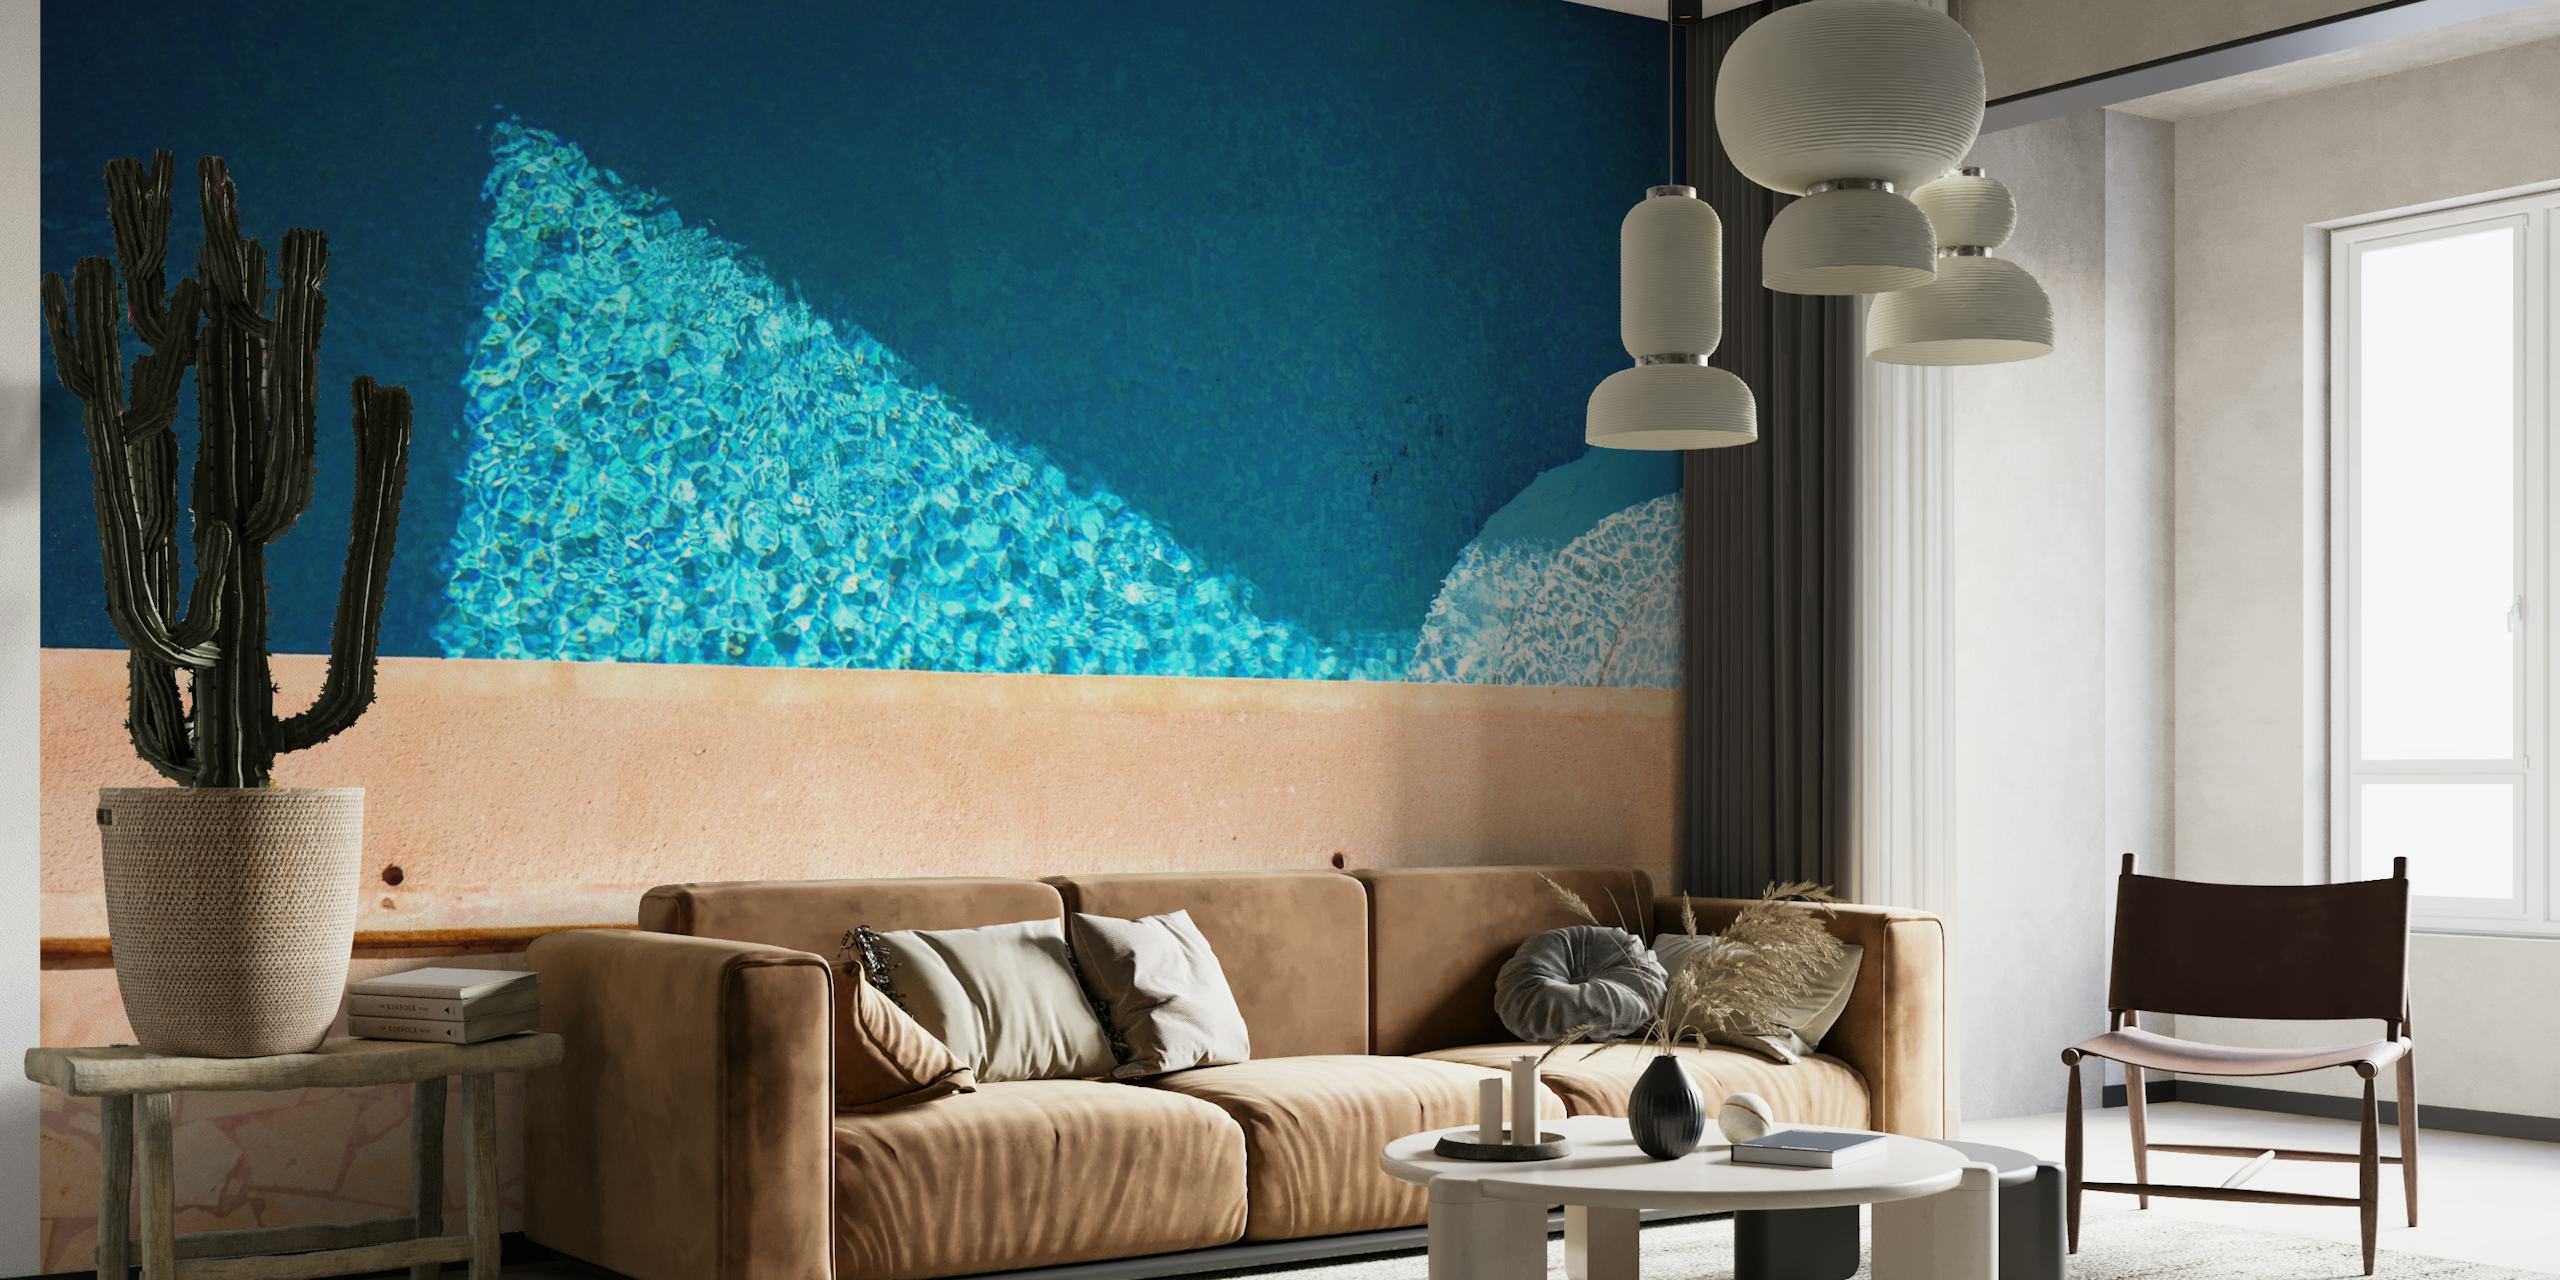 Mural de parede California Pool Dream representando as águas azuis frias de uma piscina com azulejos de terracota